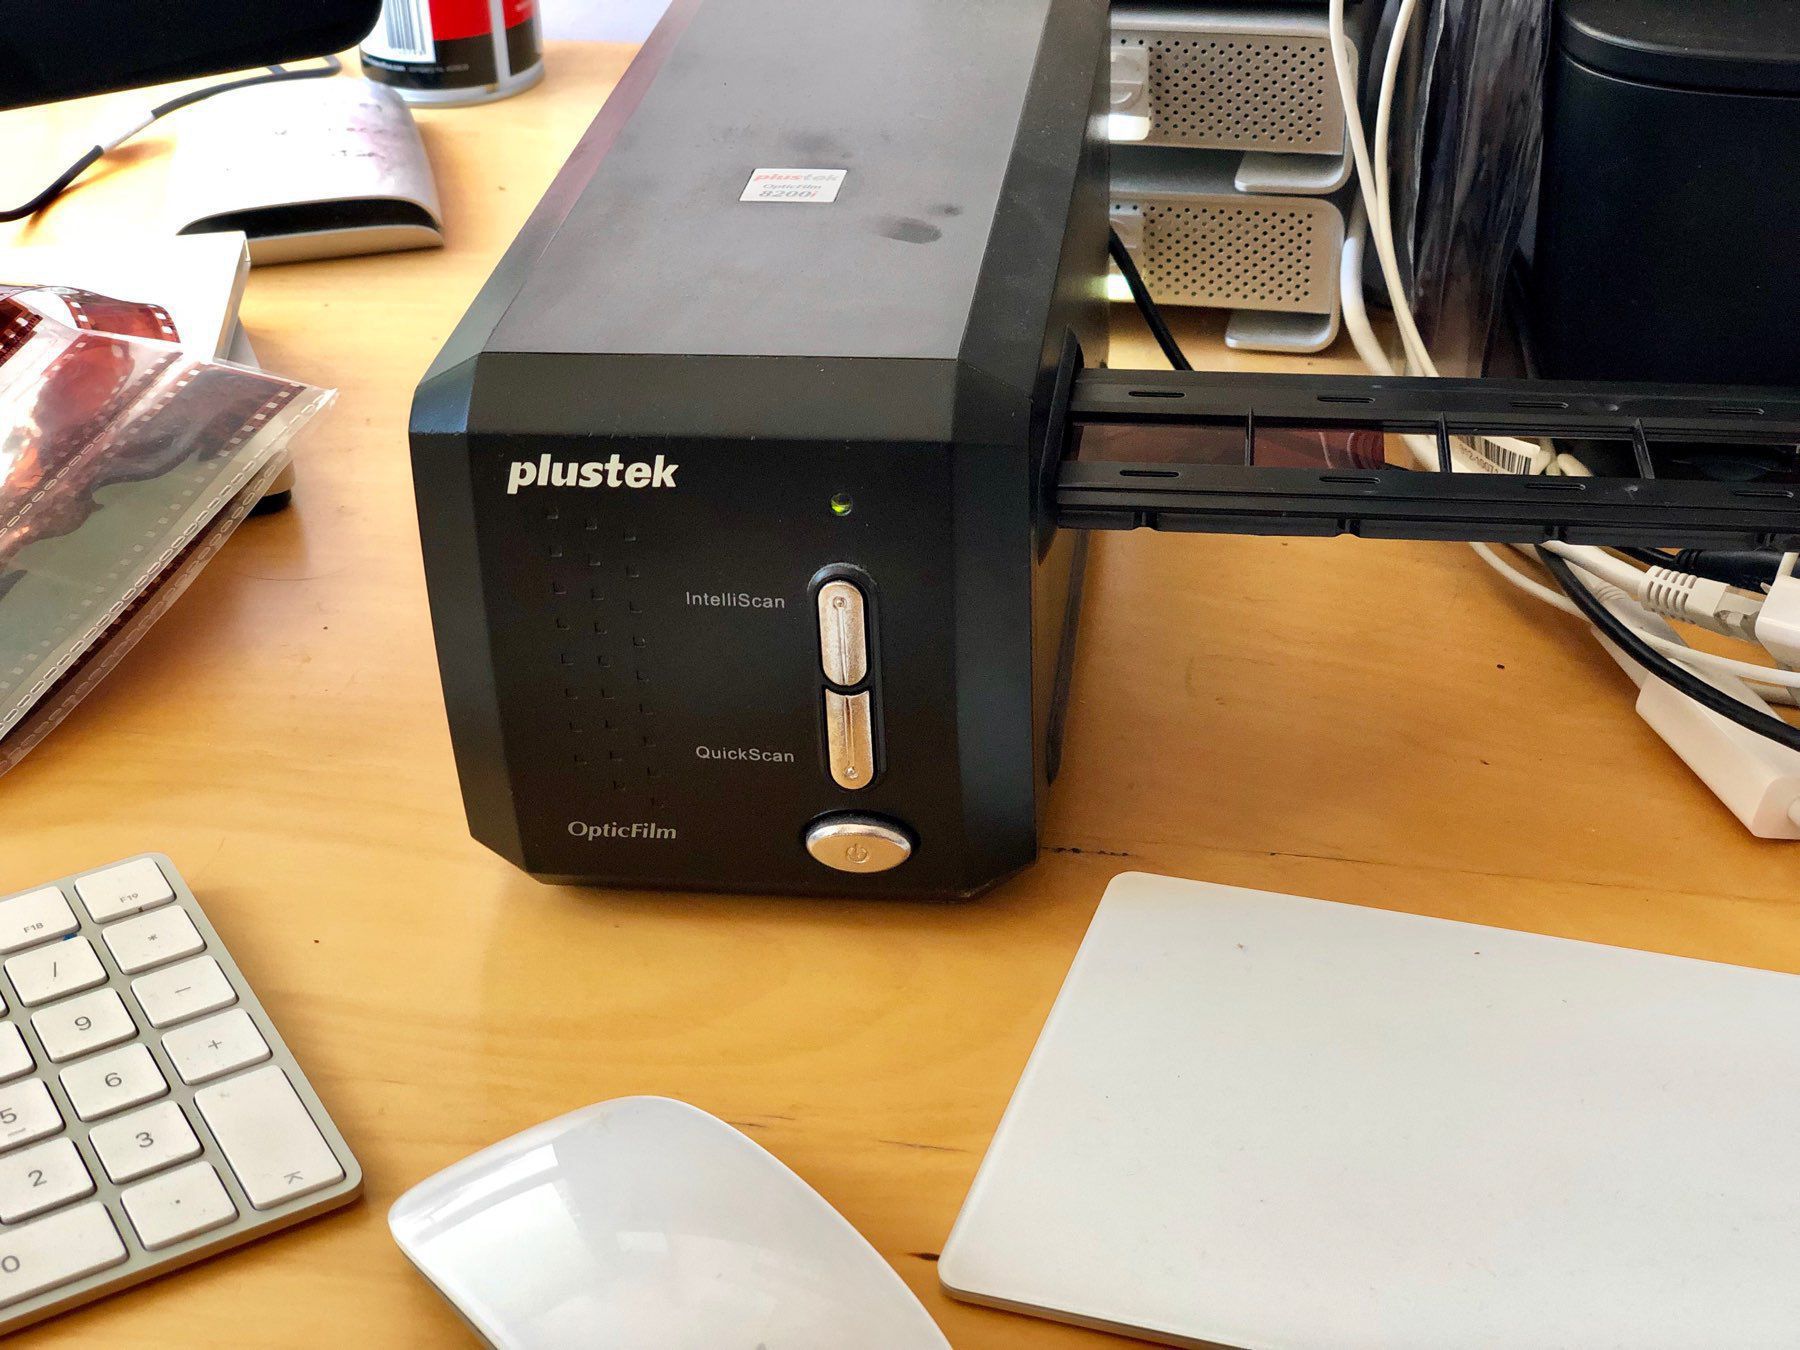 A Plustek OpticFilm scanner